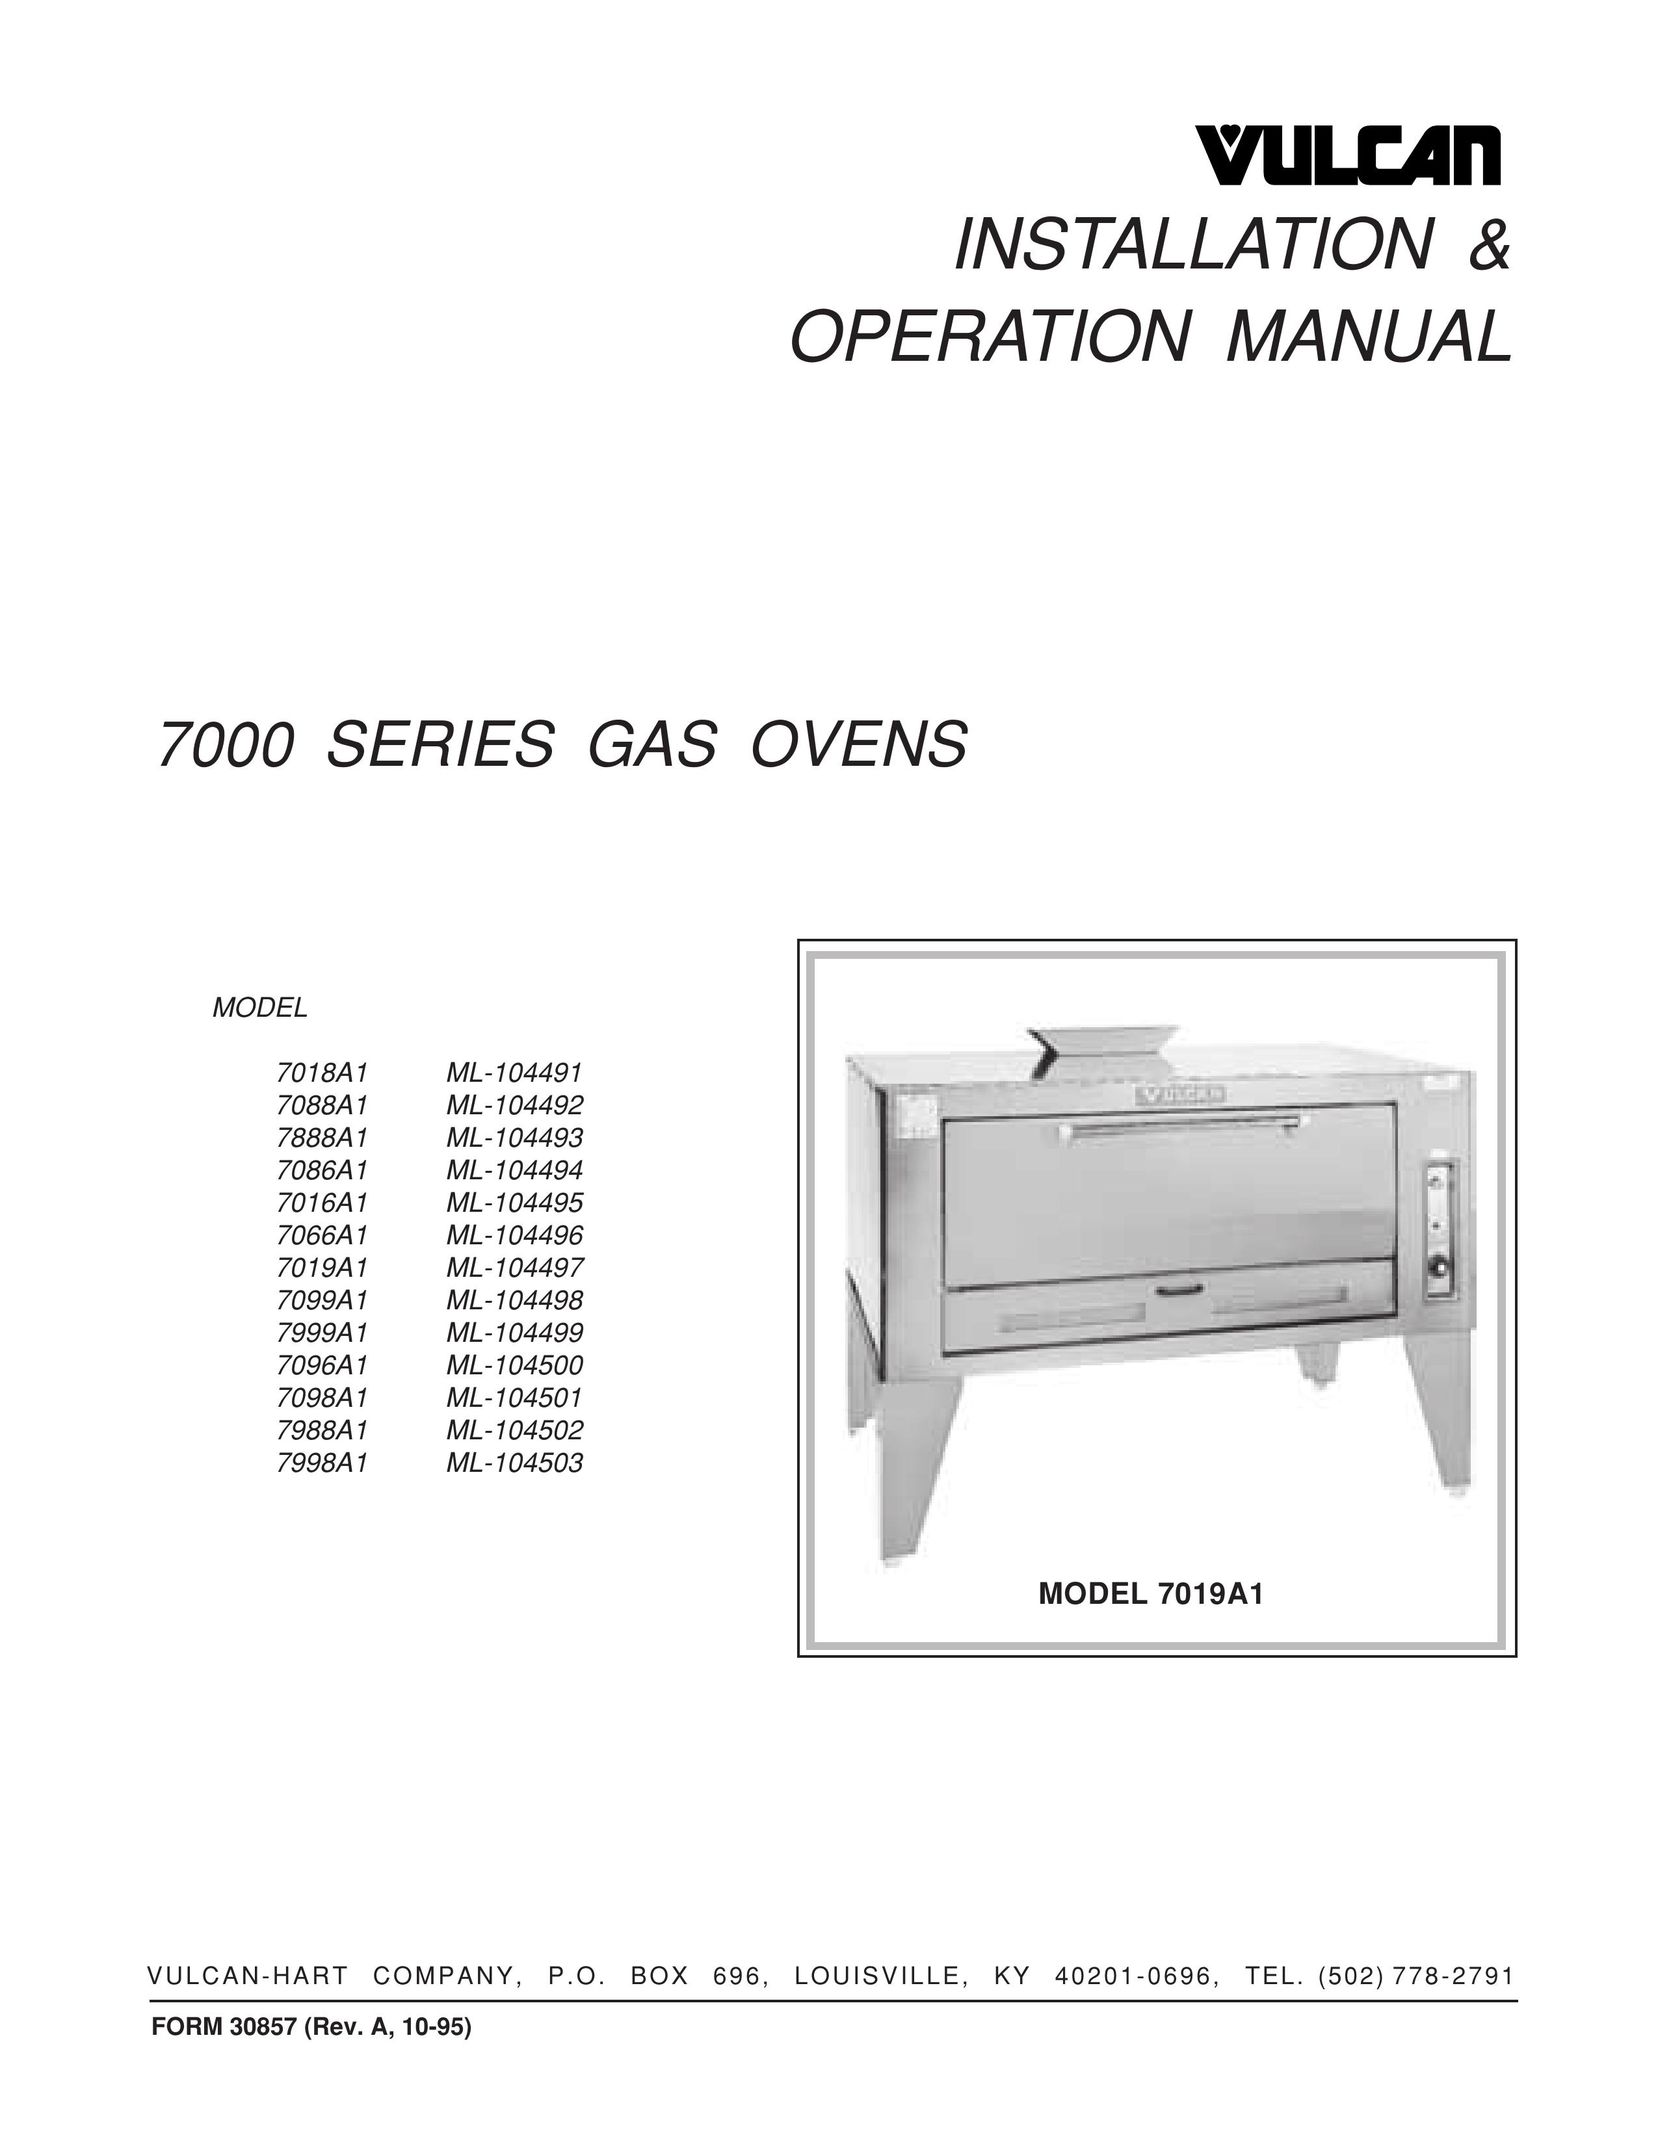 Vulcan-Hart 7888A1 ML-104493 Oven User Manual